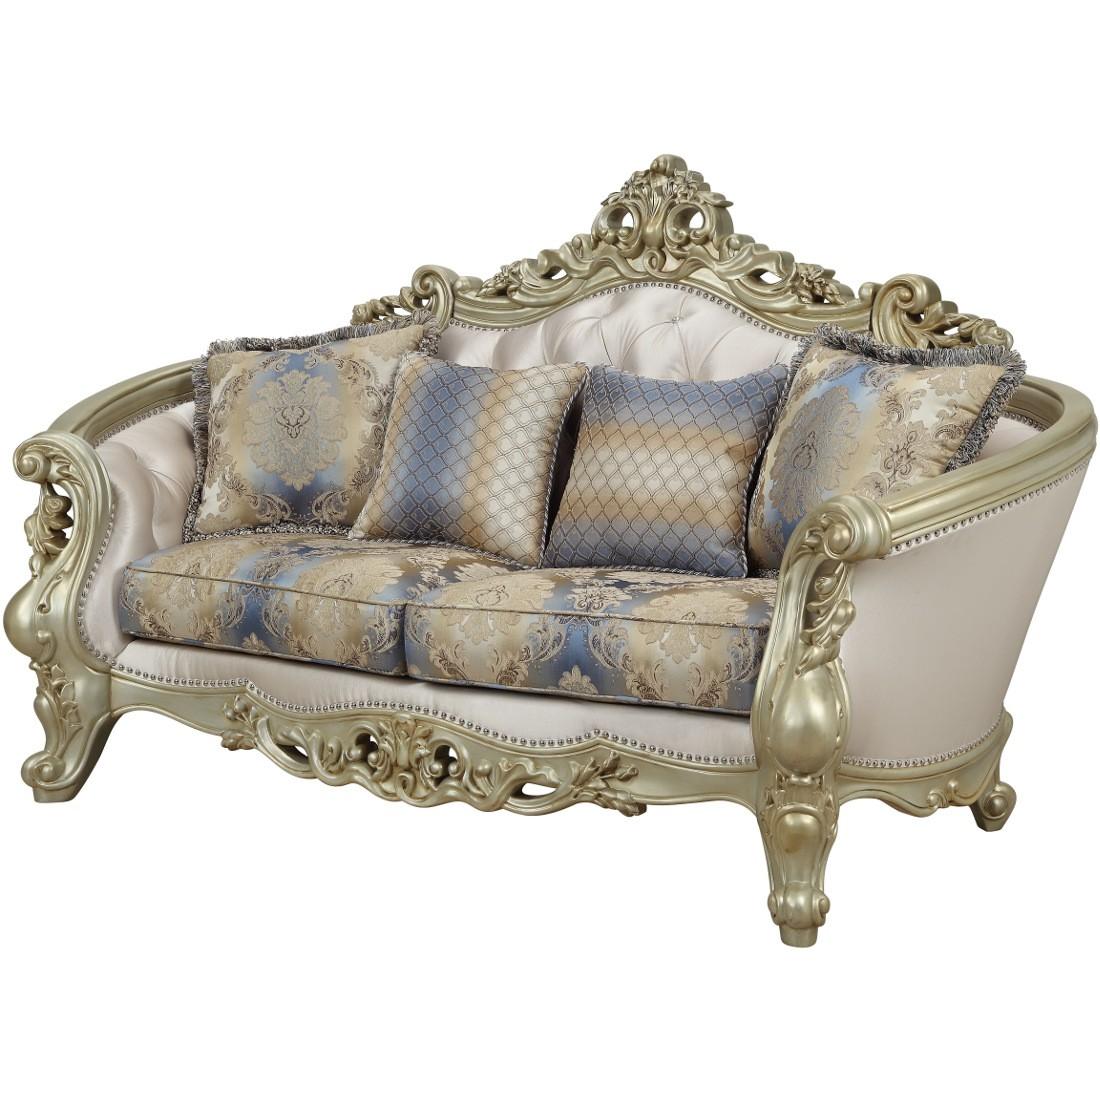 

        
Acme Furniture Gorsedd-52440 Sofa Loveseat Antique White/Cream Fabric 0840412173110
